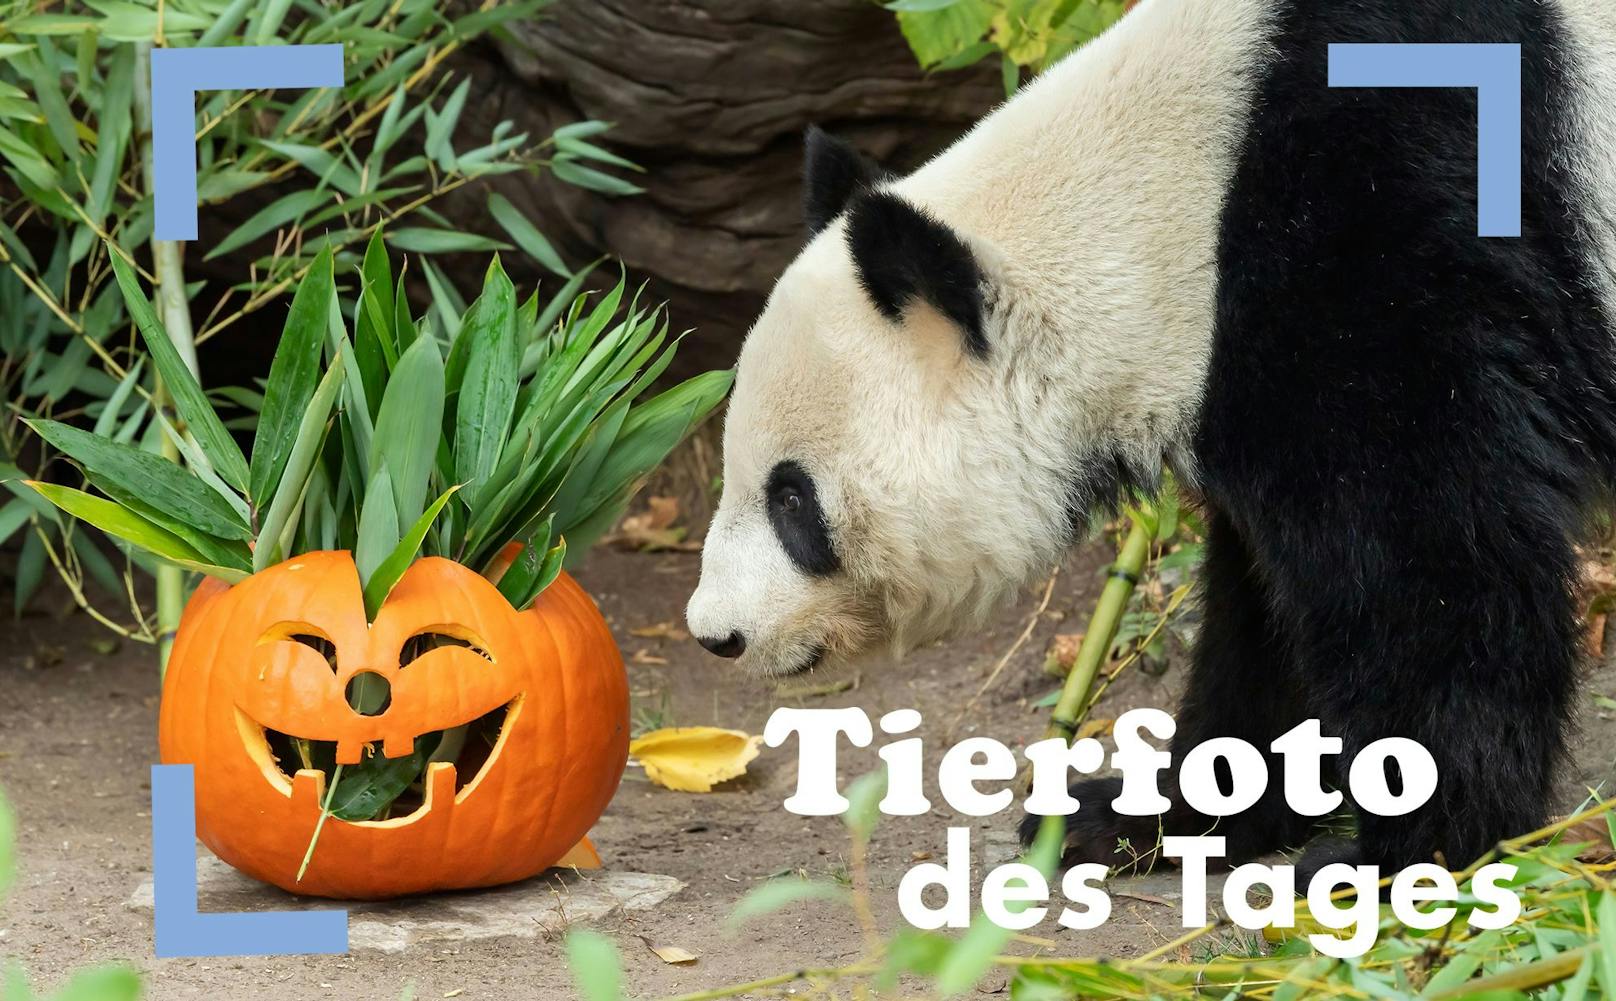 Auch im Tiergarten Schönbrunn wird schon Halloween gefeiert,...der große Panda sieht das orangefarbige Fratzengesicht allerdings zwiespältig.  